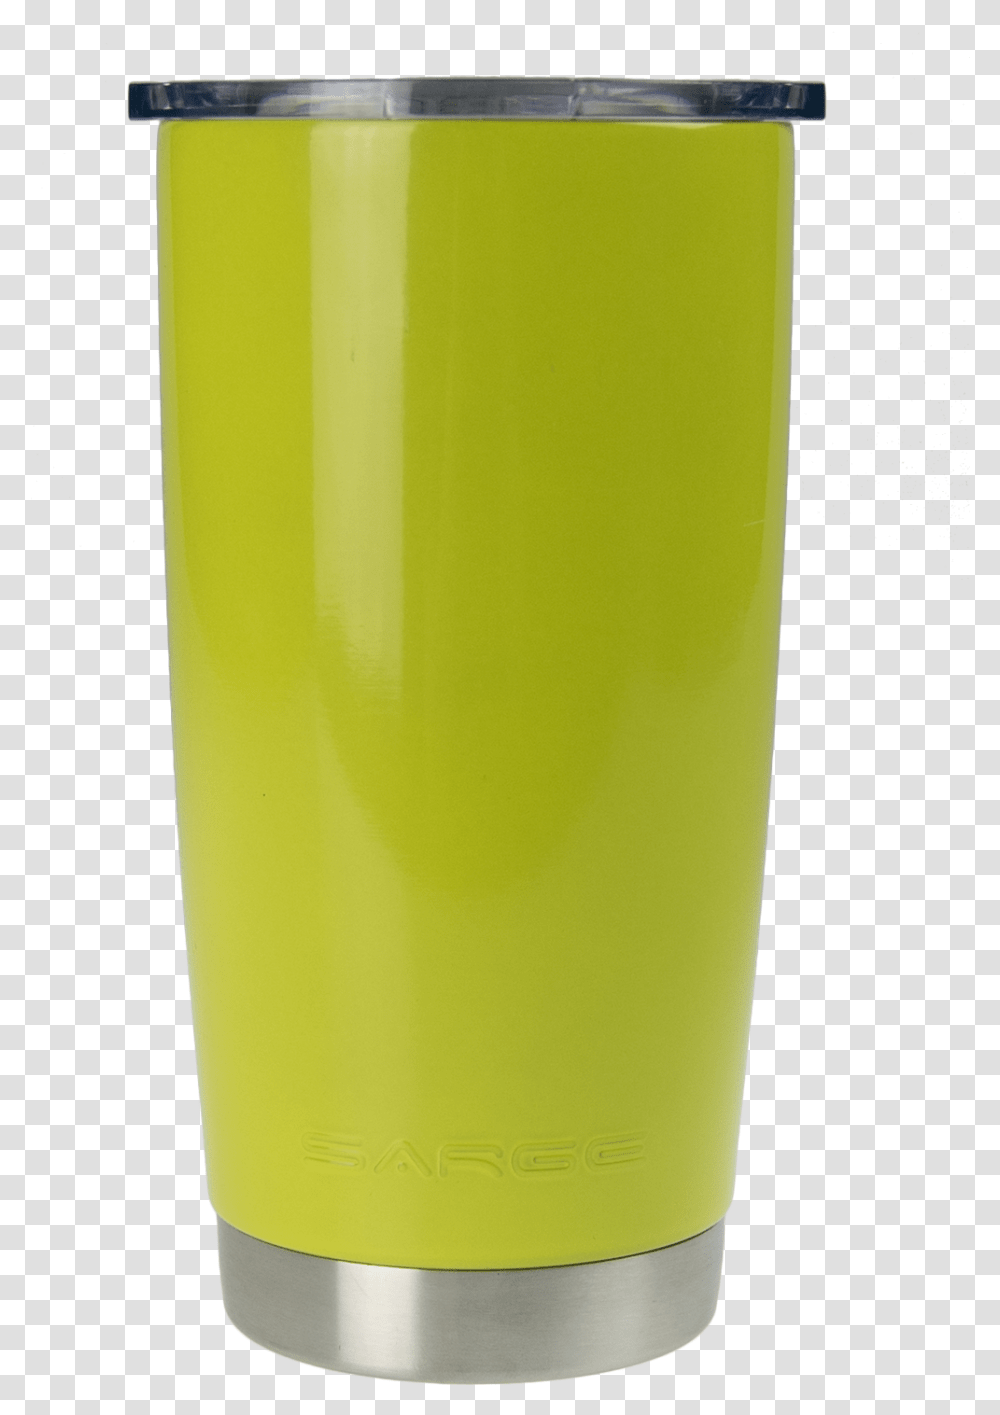 Pint Glass, Bottle, Beverage, Drink, Lemonade Transparent Png